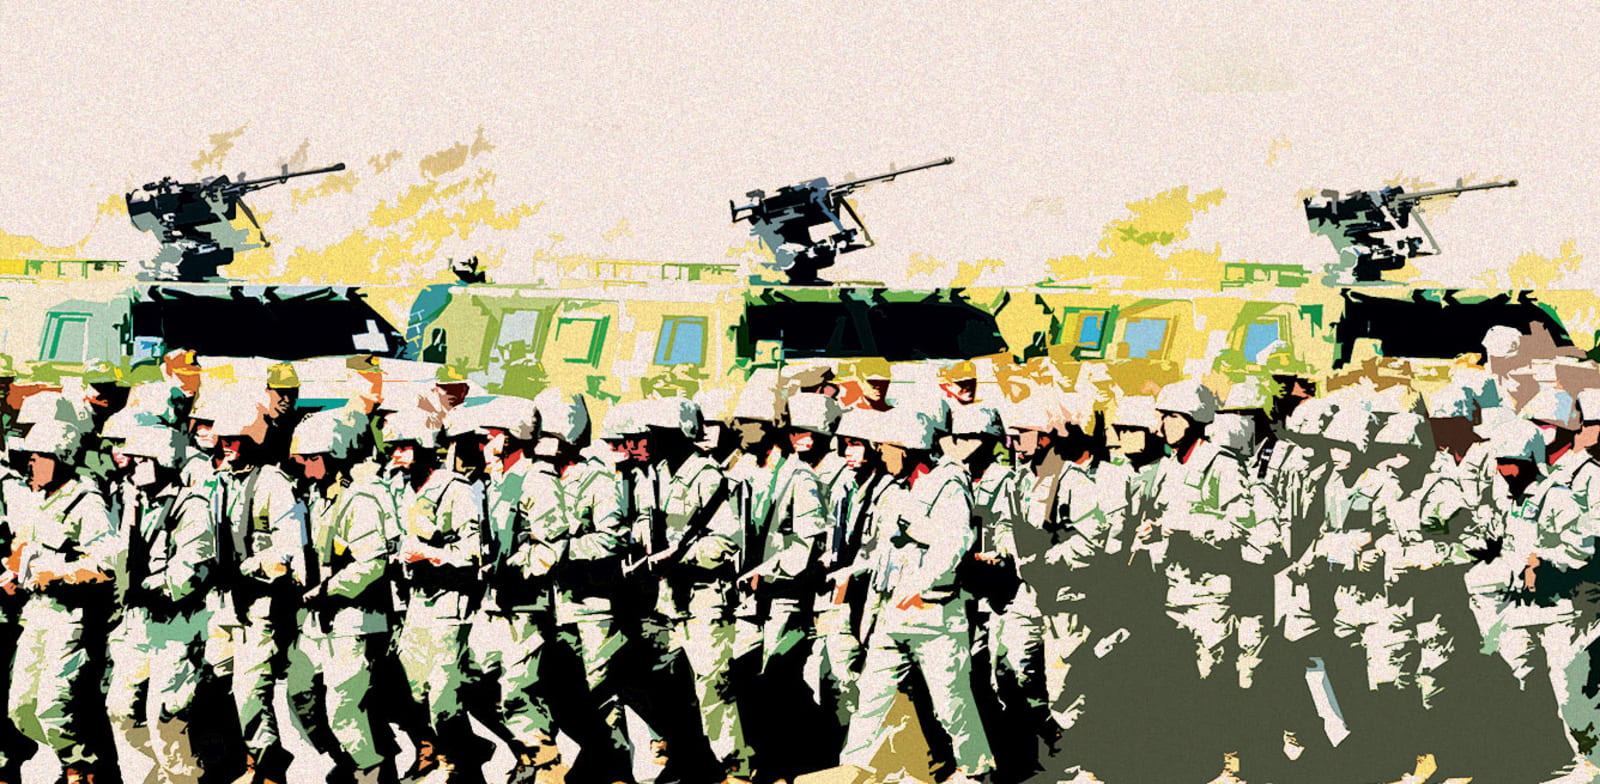 הצבא העממי של סין / צילום: ap, Heng Sinith (עיבוד תמונה)